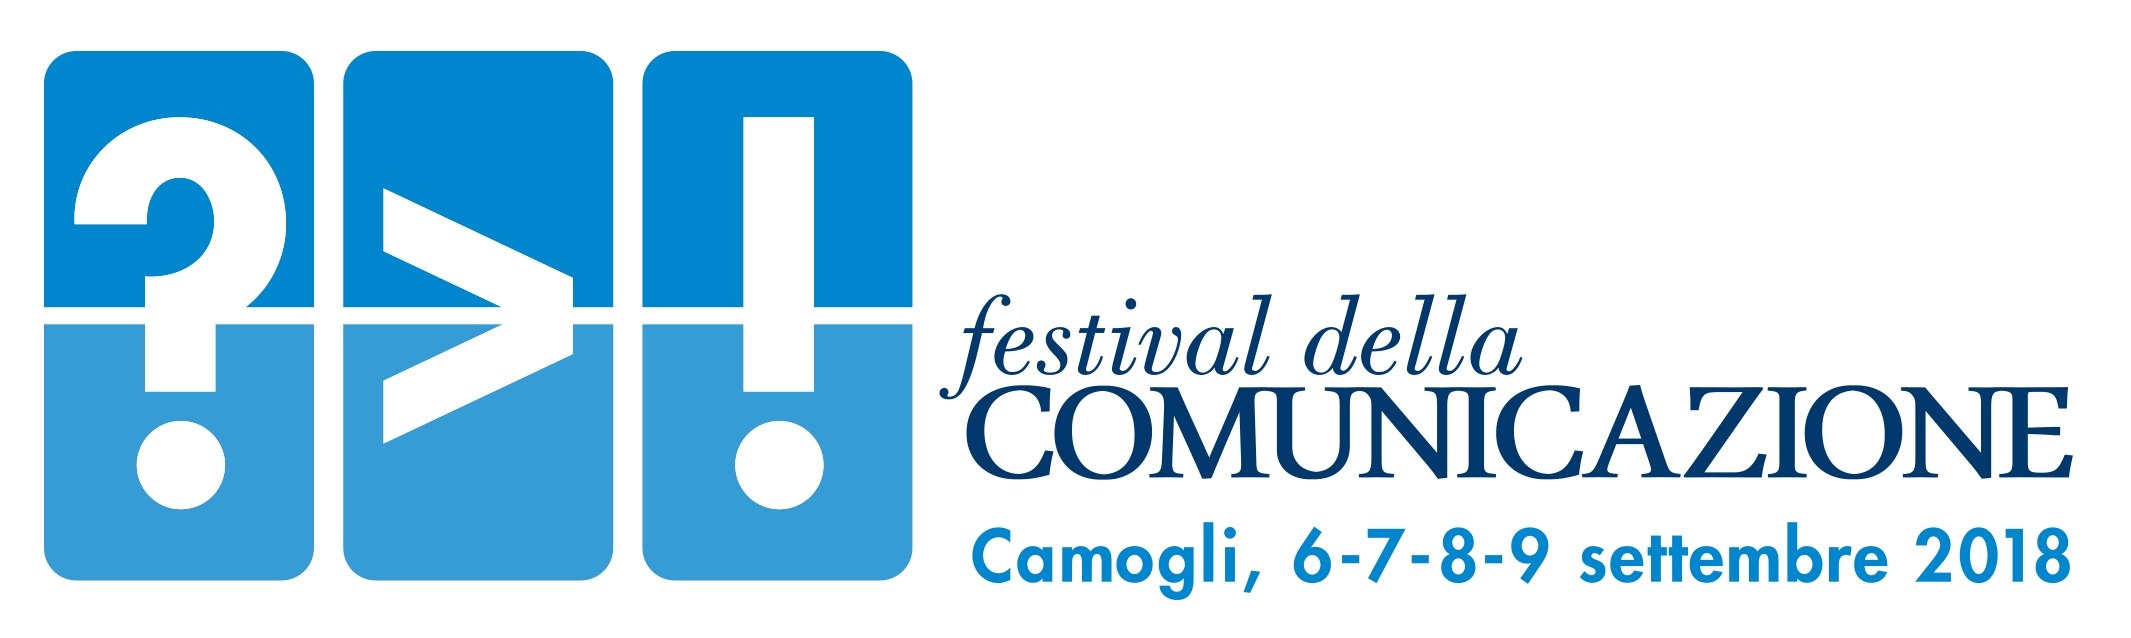 Il Festival della Comunicazione, a Camogli dal 6 al 9 settembre